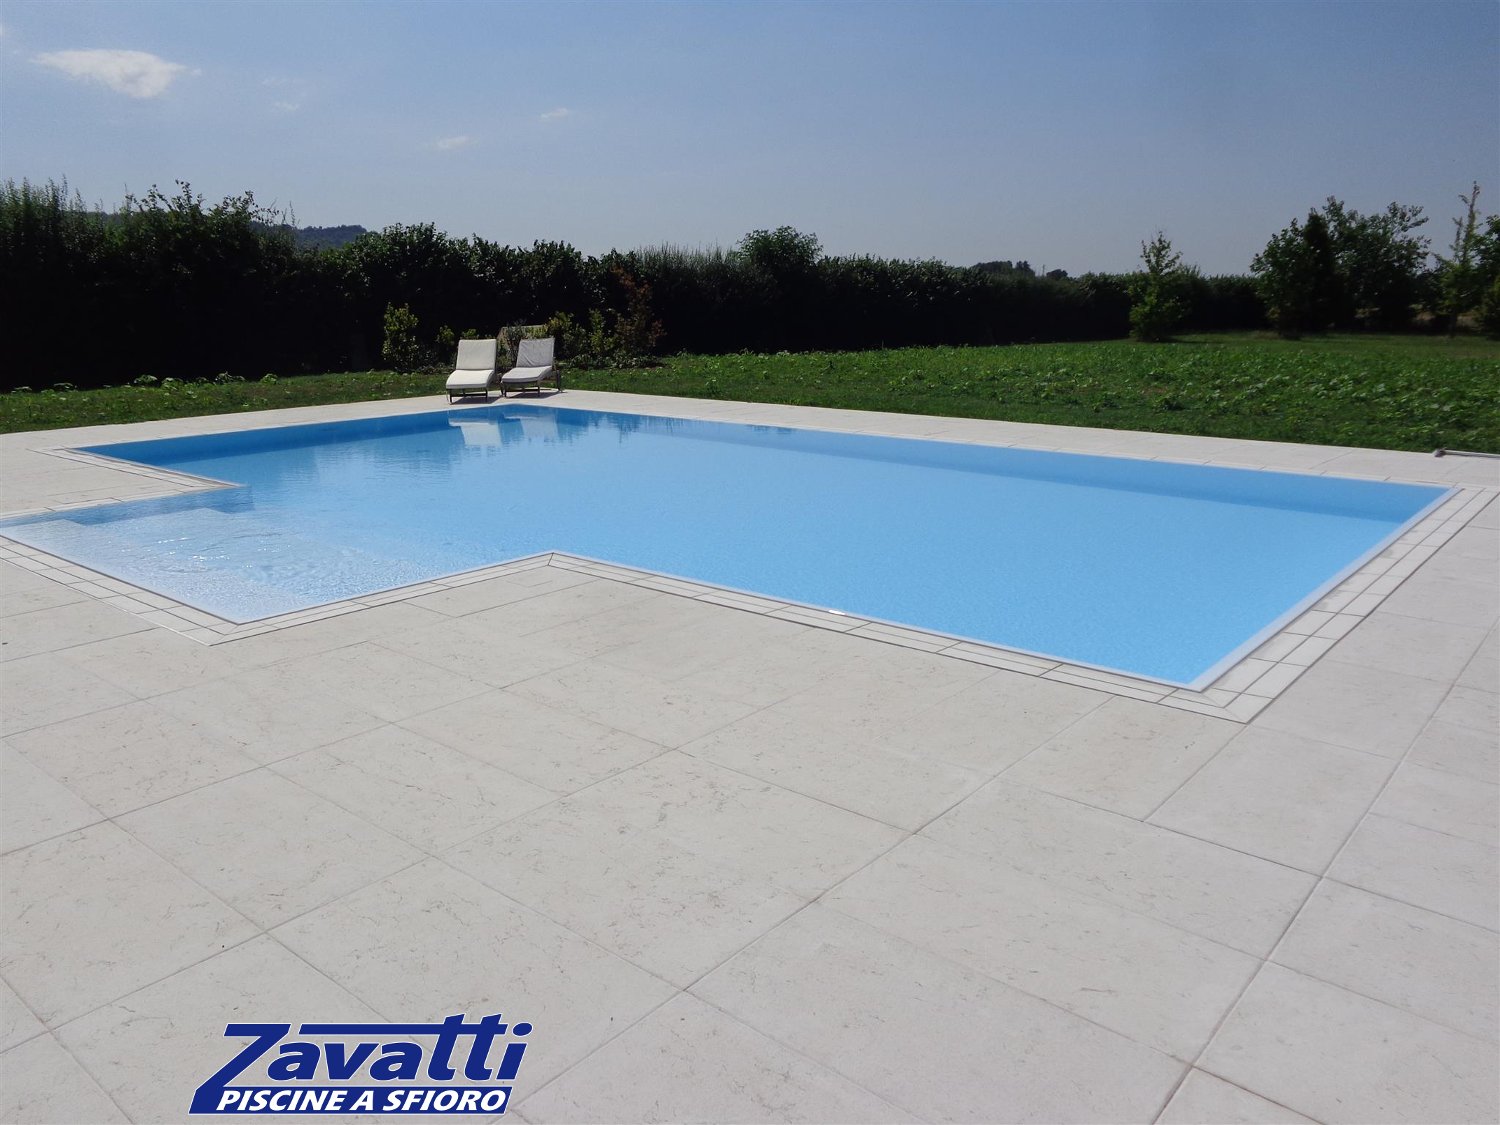 Vista completa di una piscina a sfioro autopulente Zavatti rifinita con griglia in pietra naturale bianca a una fessura